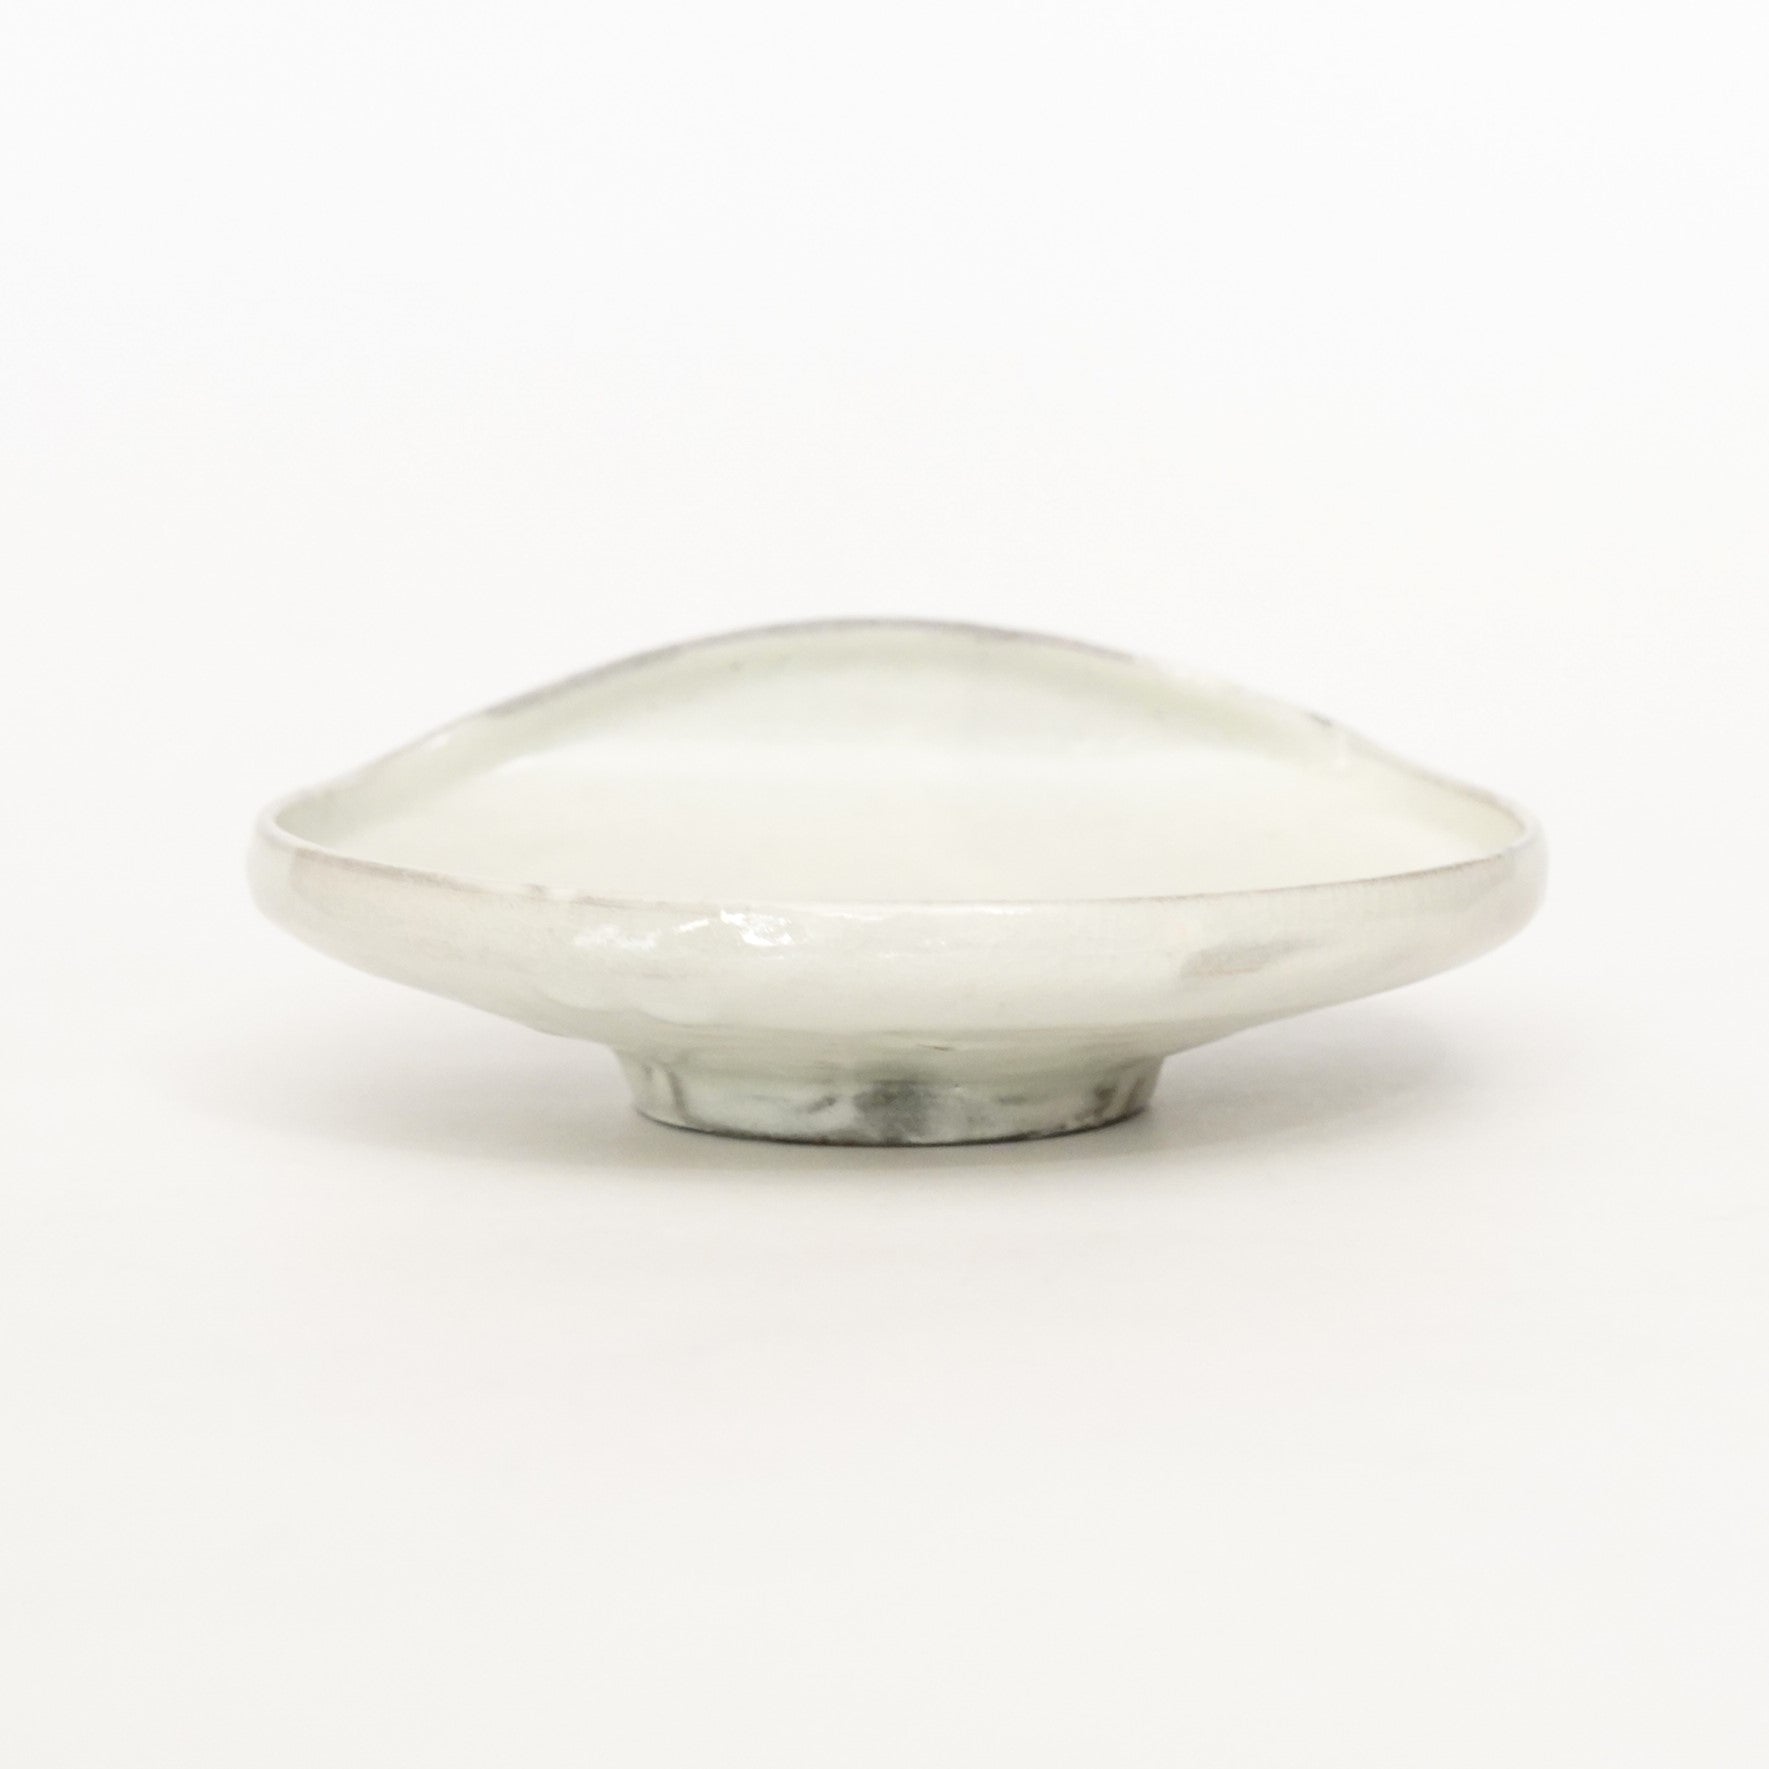 【Hiroyumi Suzuki】Mishima bowl